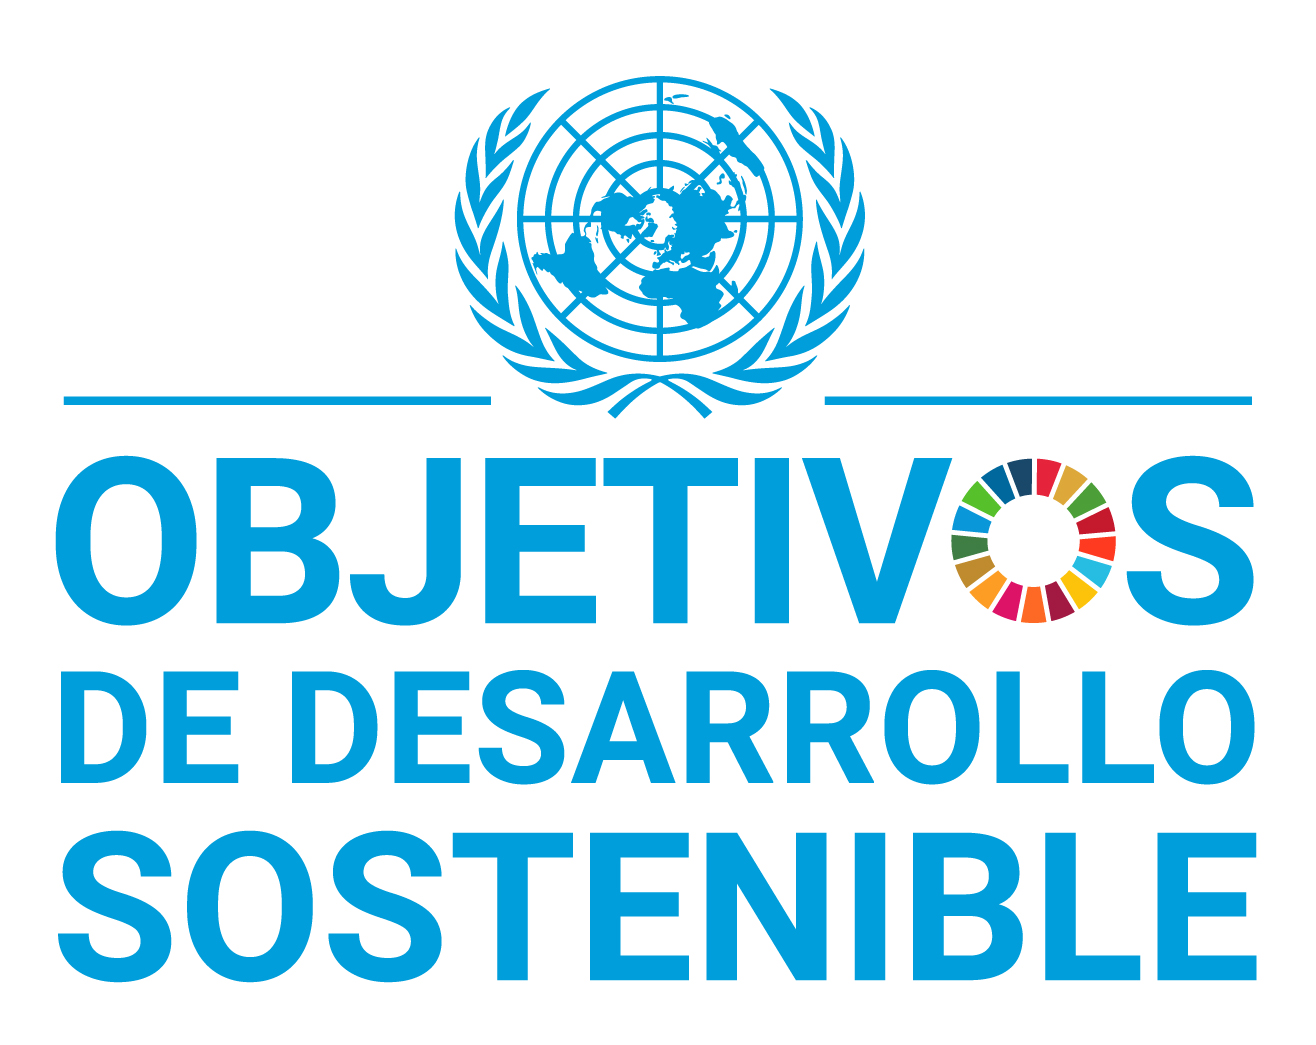 Trabajar para cumplir los Objetivos de Desarrollo Sostenible